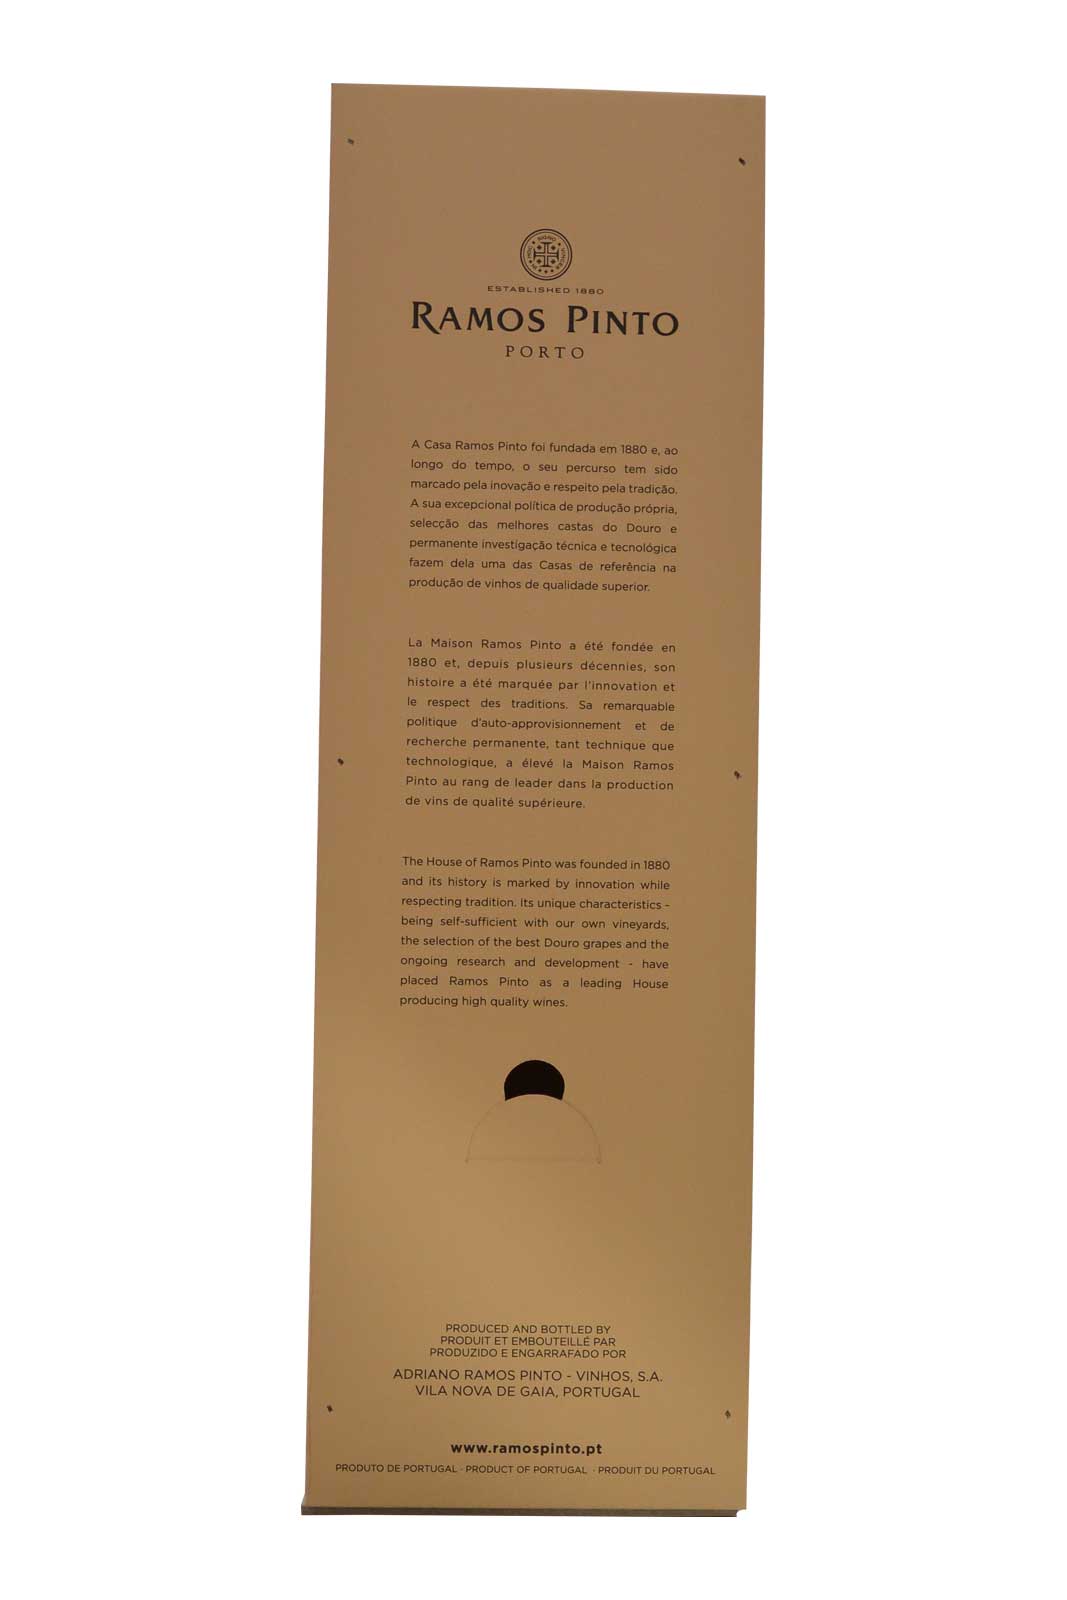 Ramos Pinto 20 ans